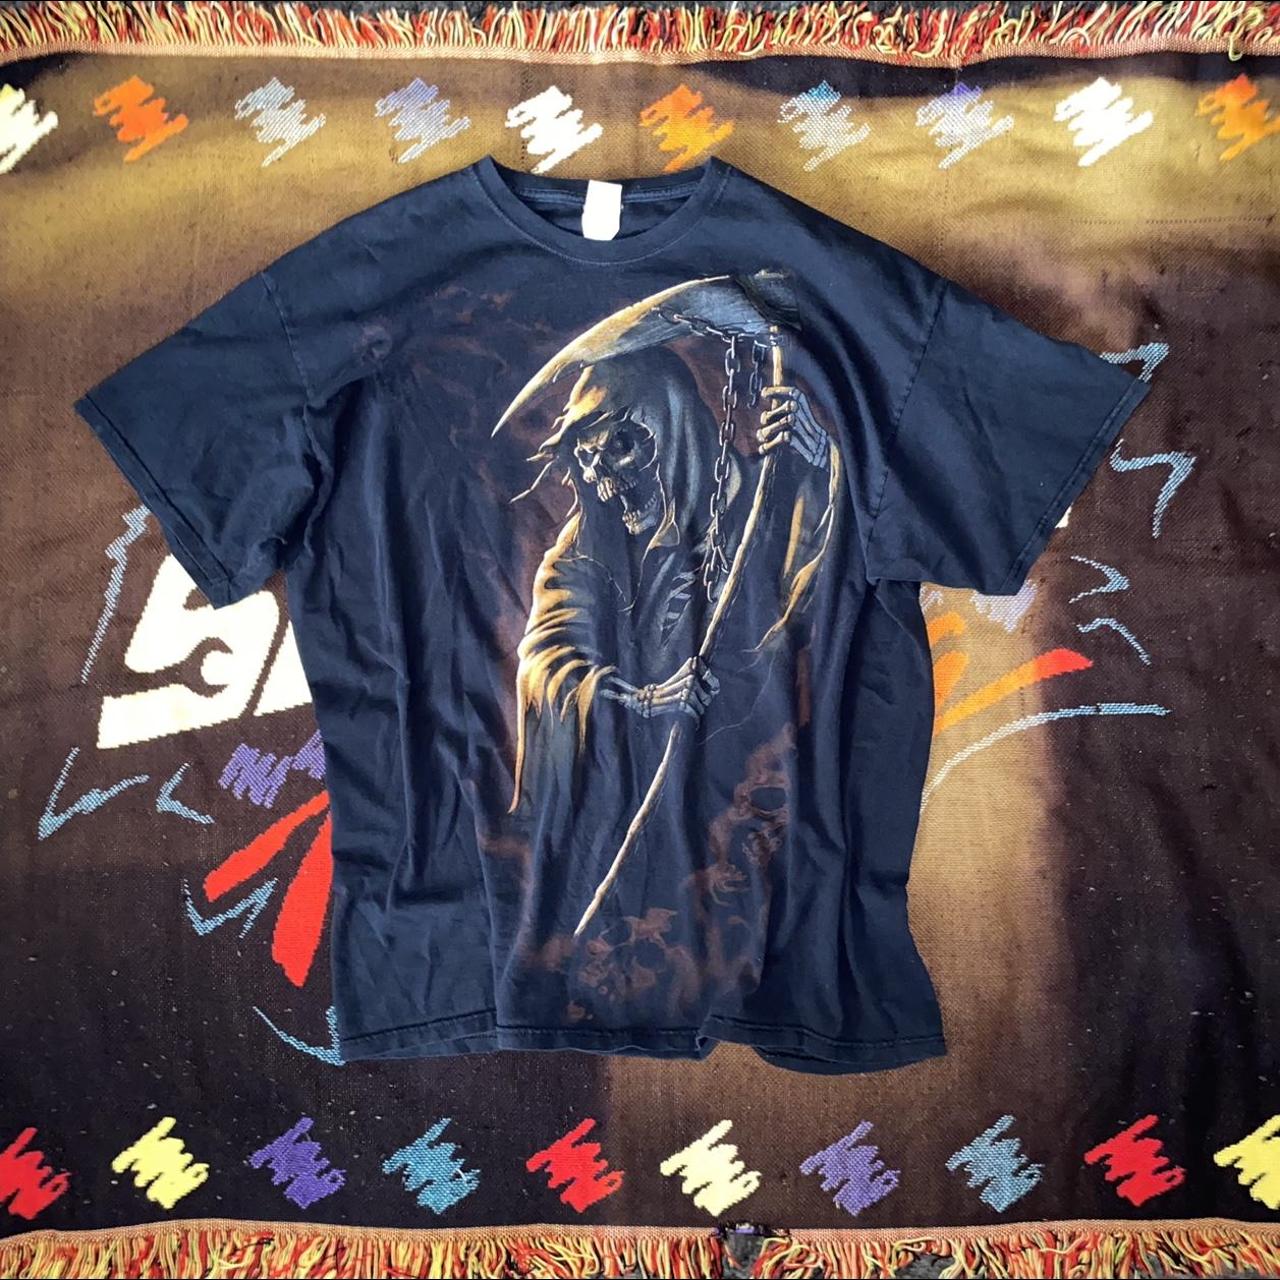 Skeleton grim reaper shirt size... - Depop